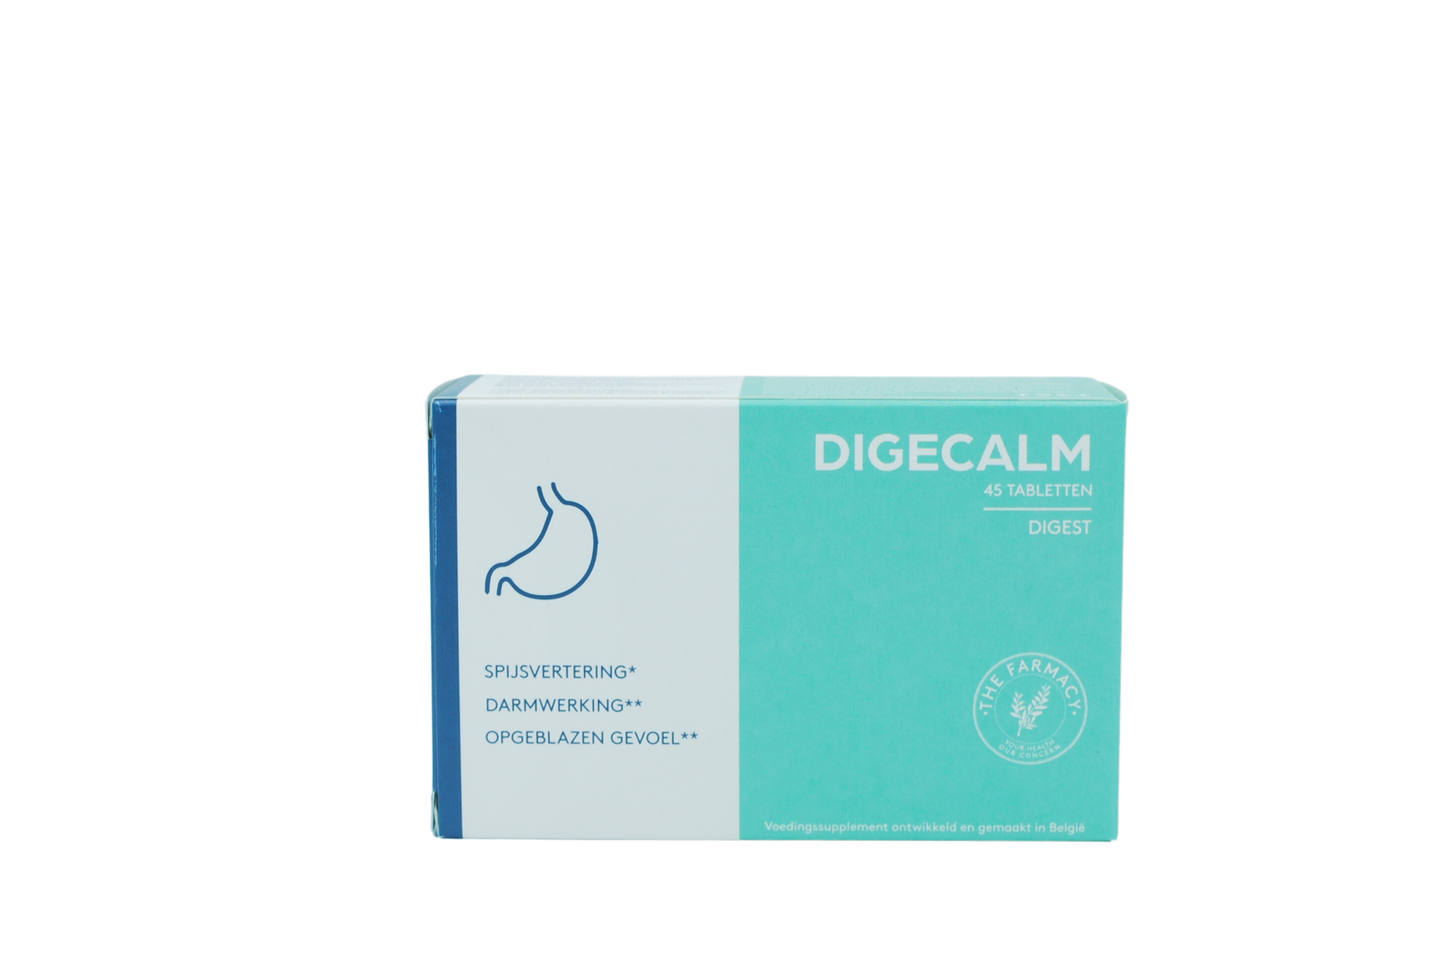 Digecalm 45 tabletten